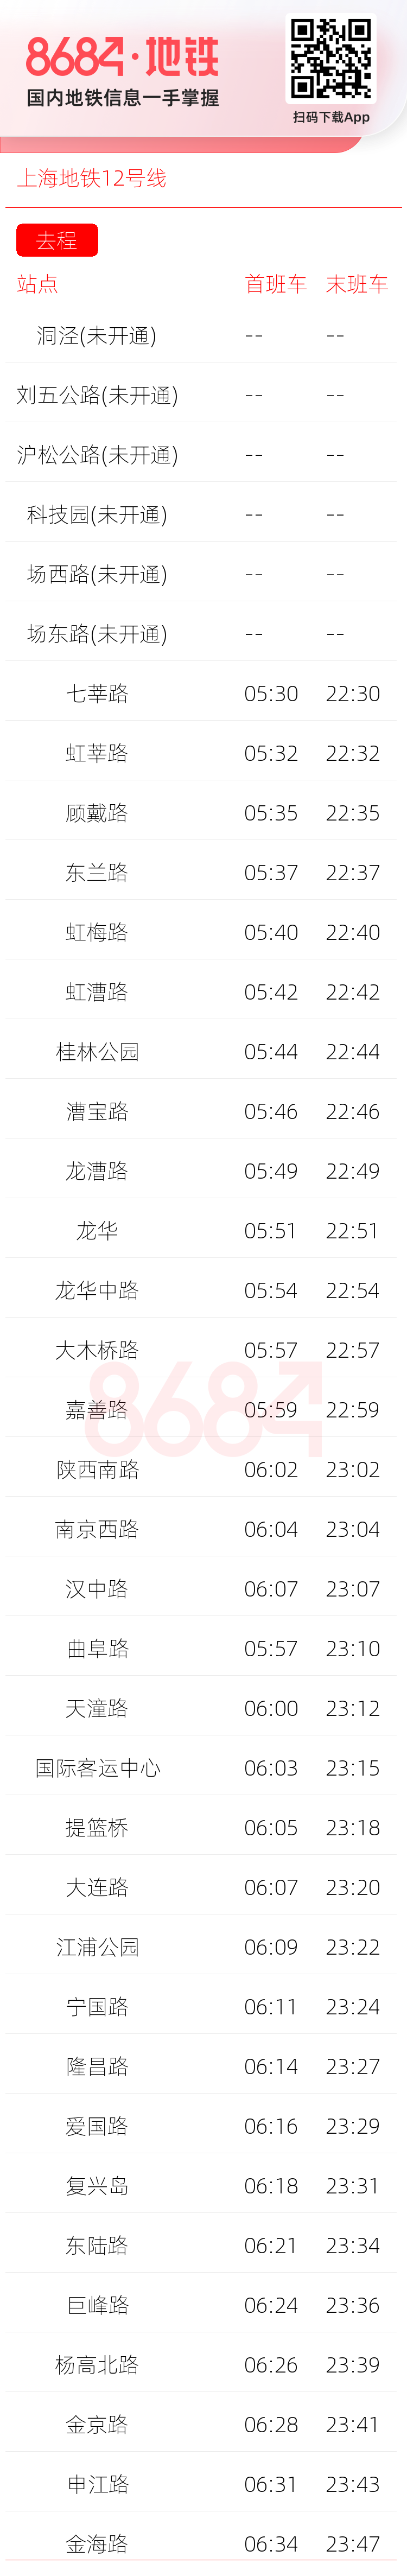 上海地铁12号线运营时间表